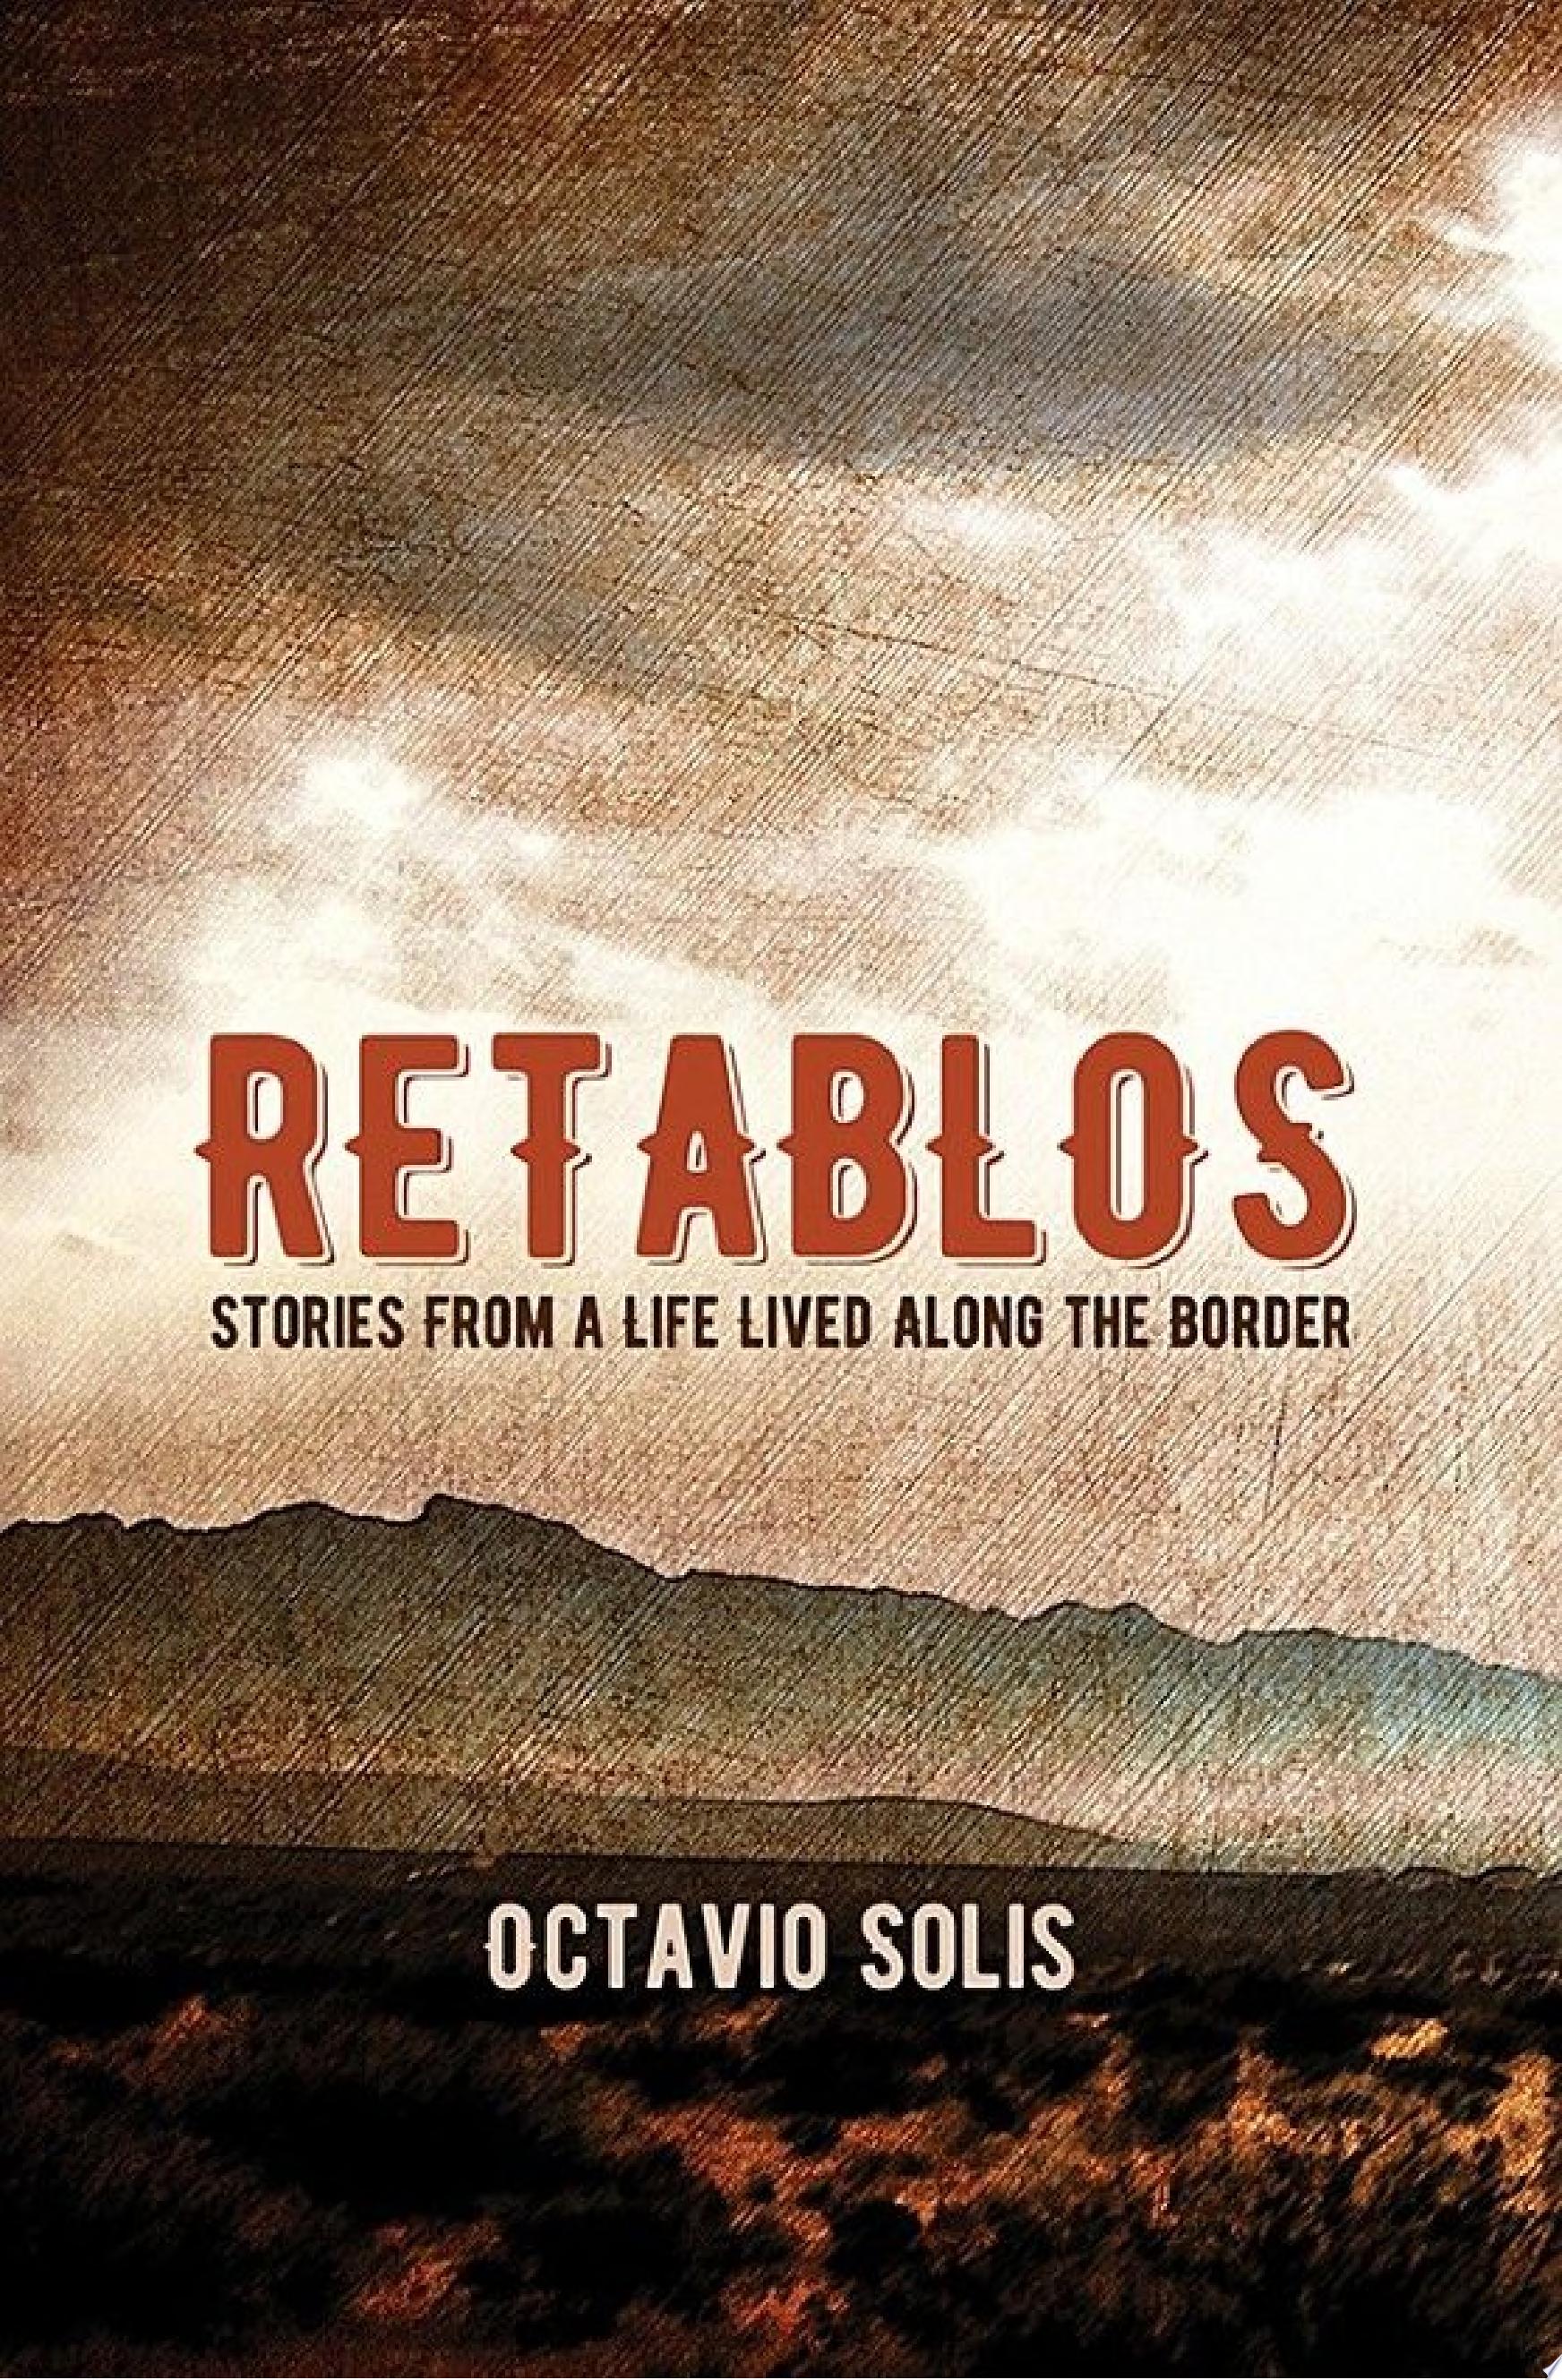 Image for "Retablos"